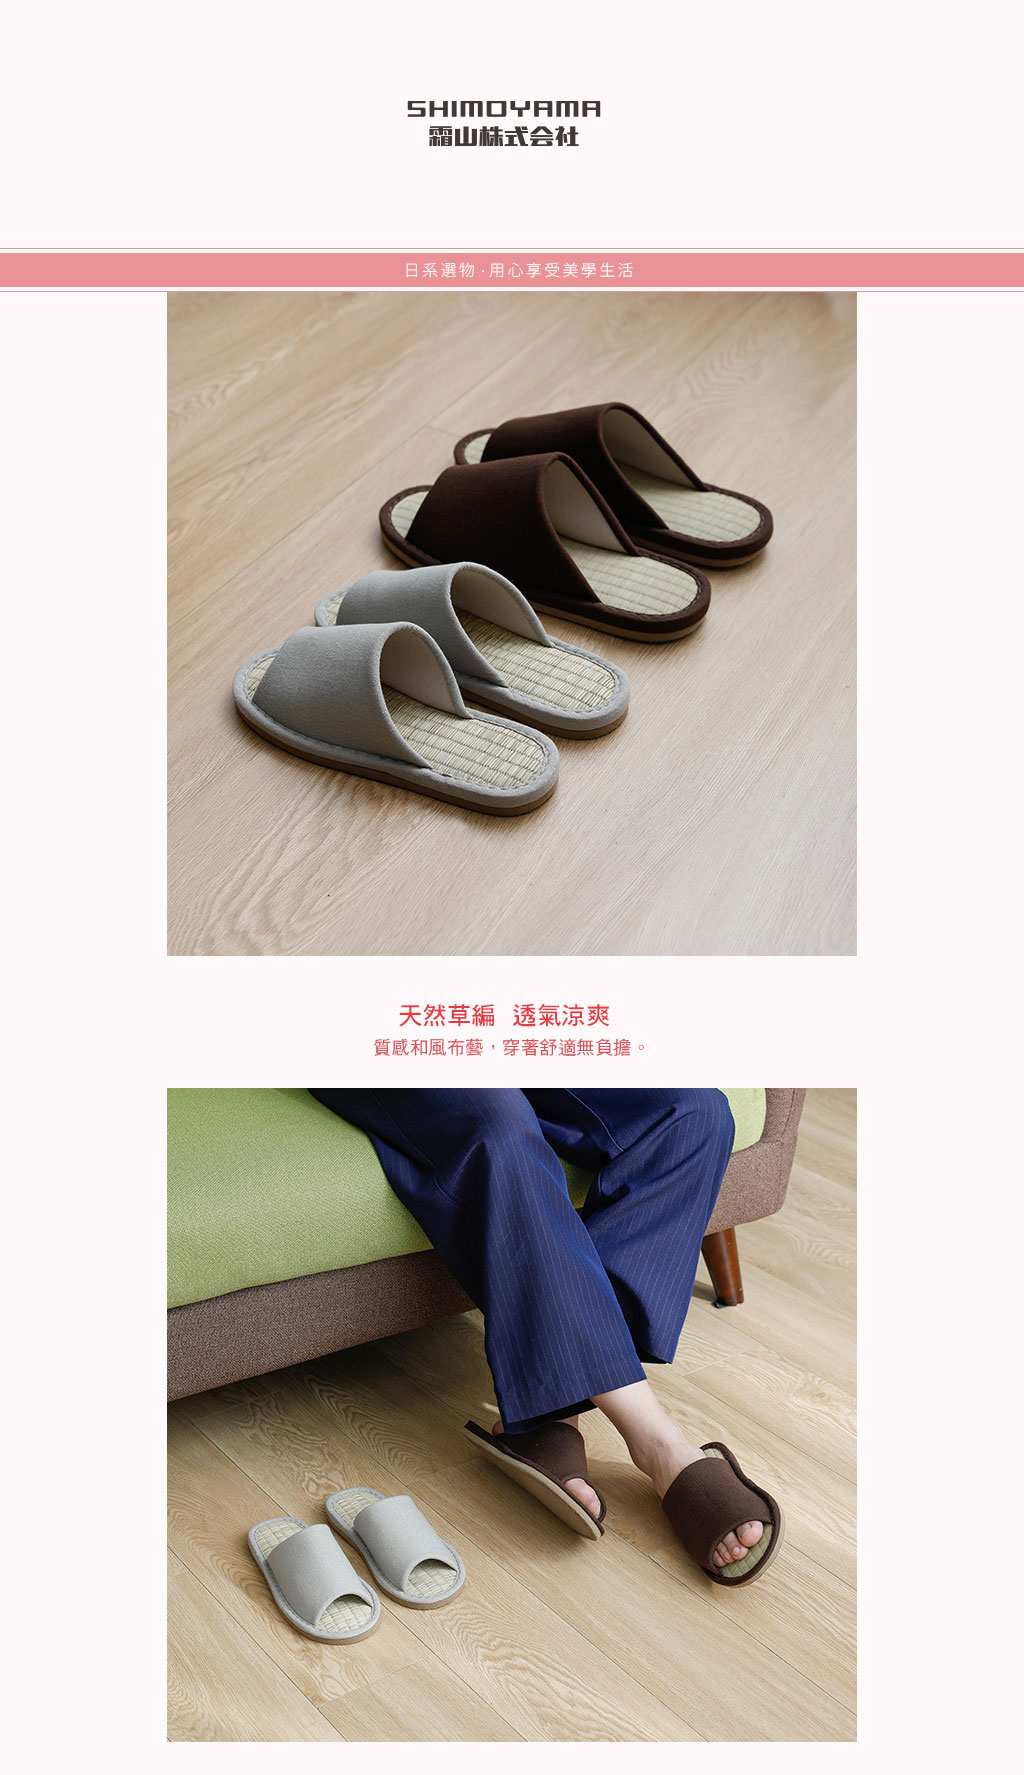 日本霜山 EVA和風布藝 透氣涼爽室內竹蓆拖鞋 (男女款可選)